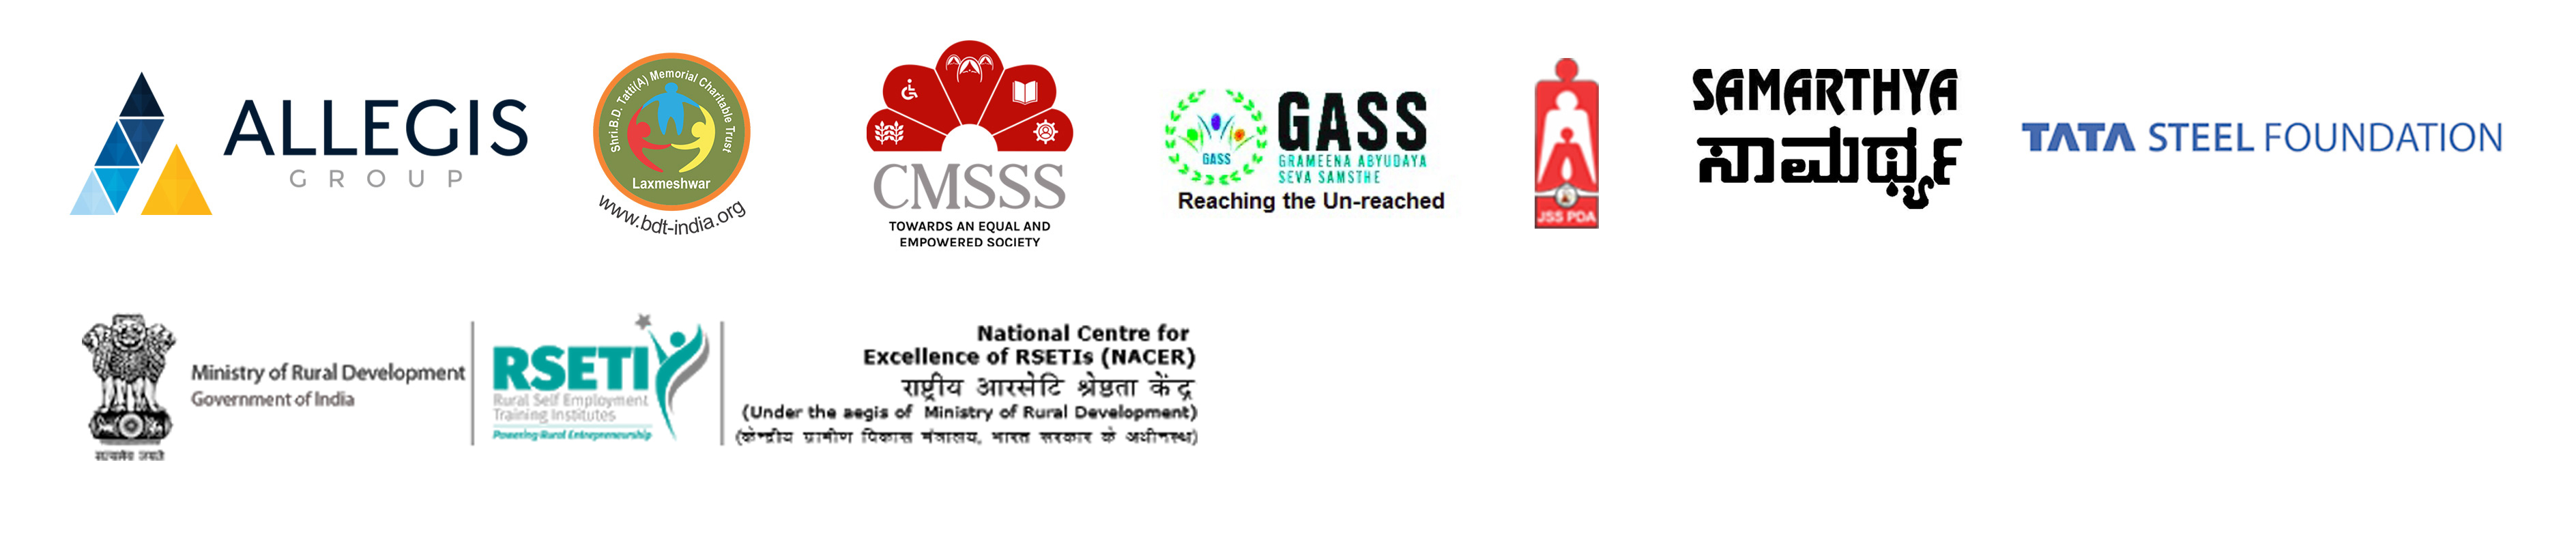 Logos: Allegis, BD Tatti, CMSSS, GASS, JSS PDA, Smarthya, Tata Steel Foundation; RSETI